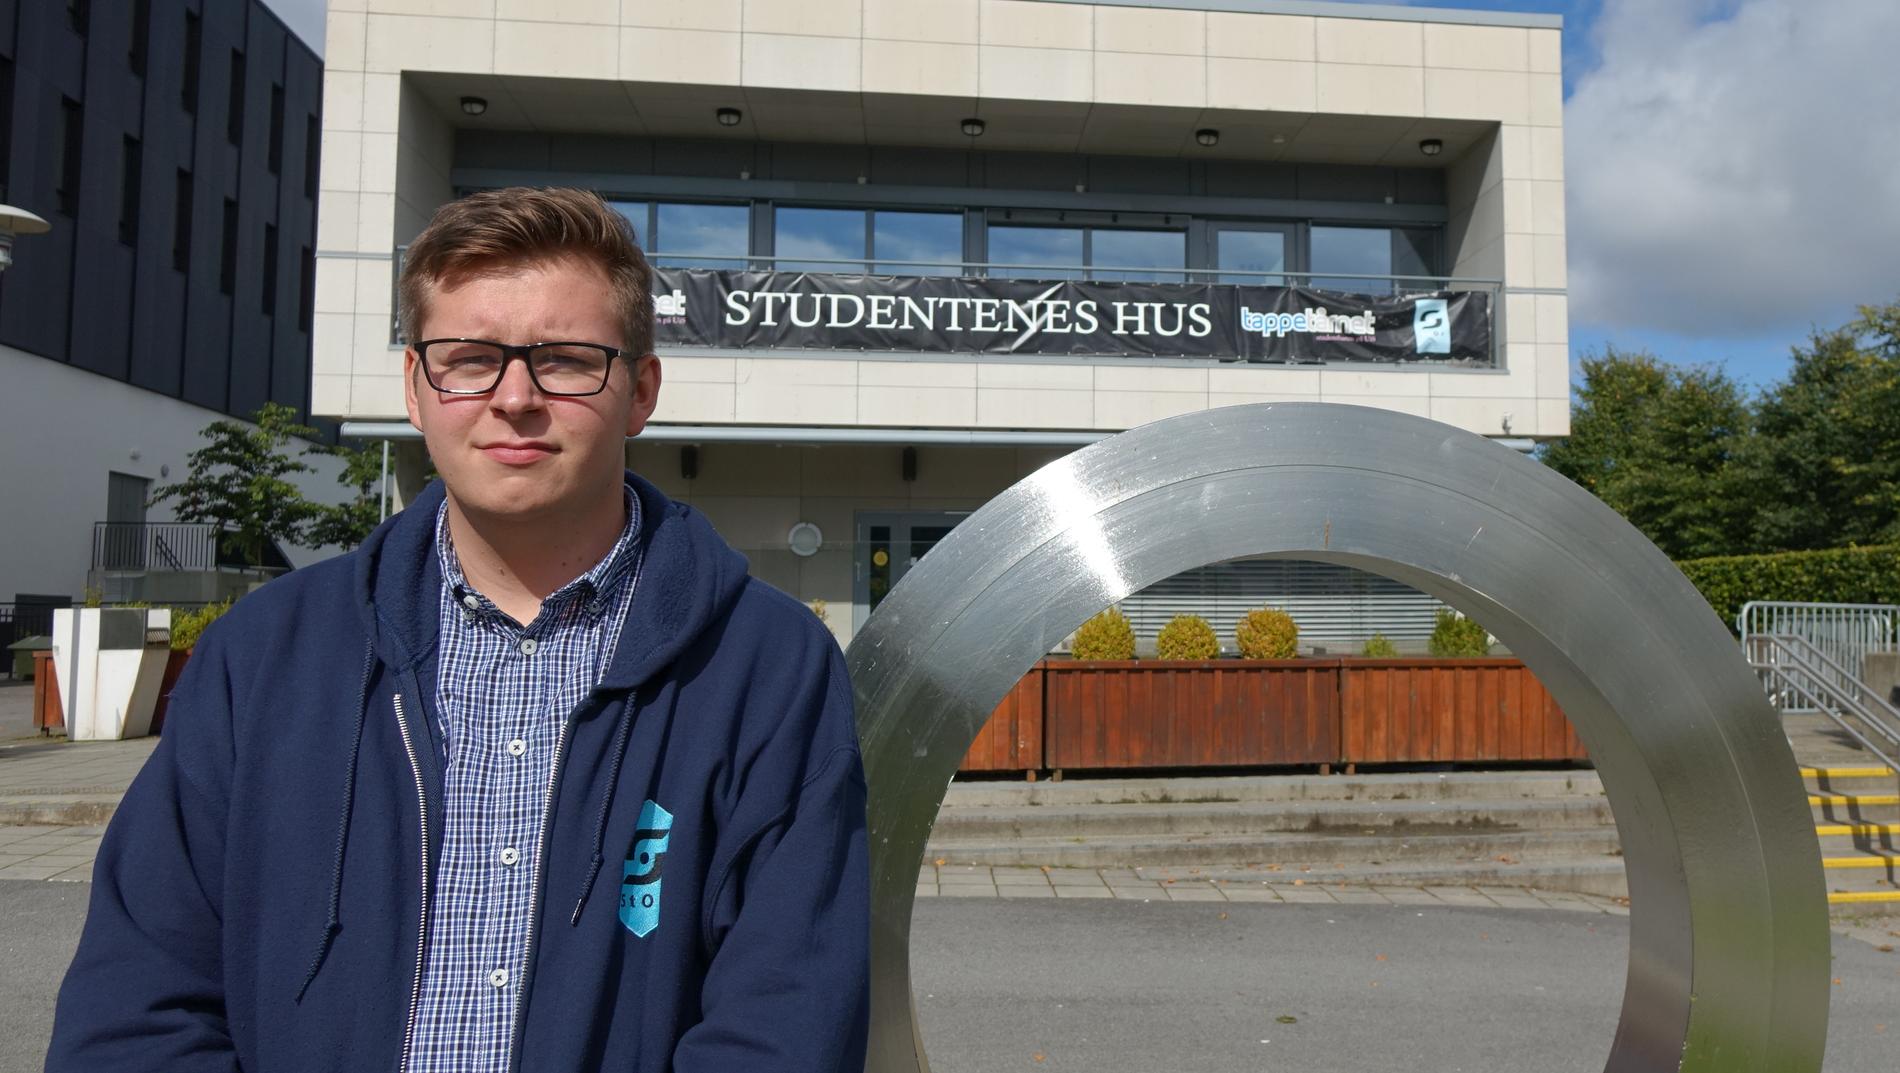 Lederen for Student Organisasjonen (StOr) ved Universitetet i Stavanger, Jørgen Hedin Sjøberg (25), stiller seg svært kritisk til kampanjen. 